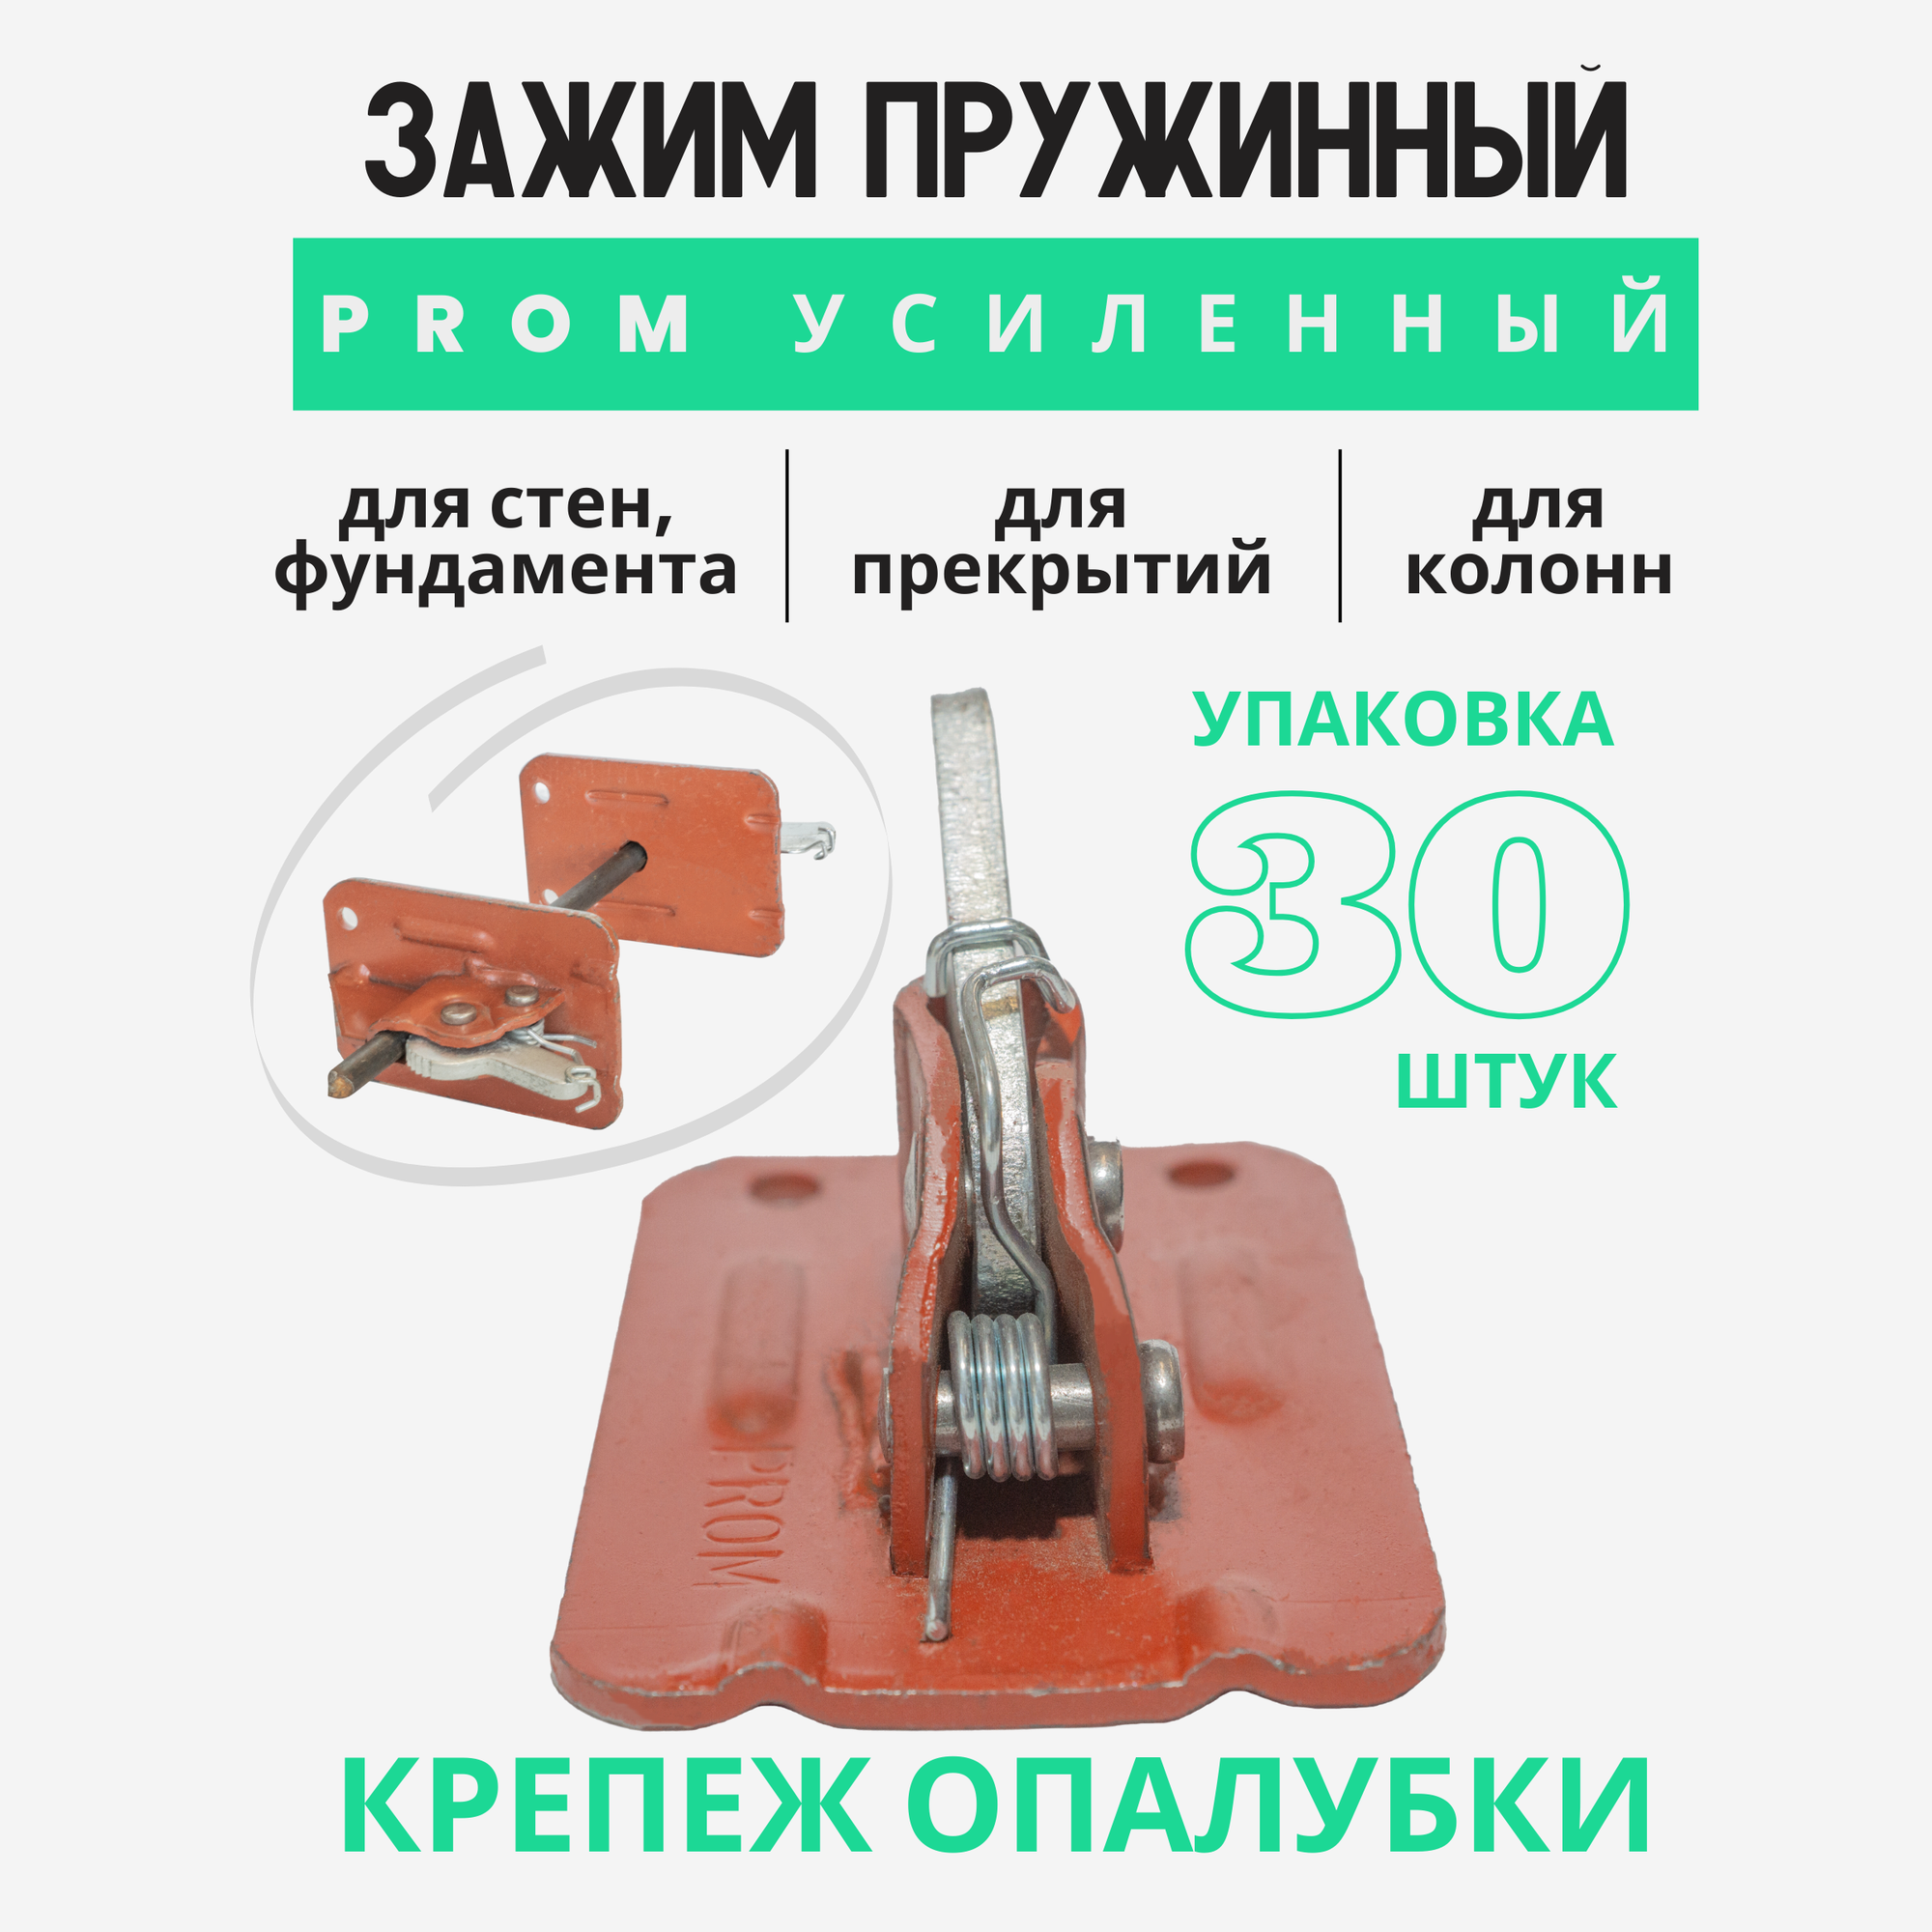 Пружинный зажим для опалубки струбцина Промышленник PROM усиленный упаковка 30 шт.